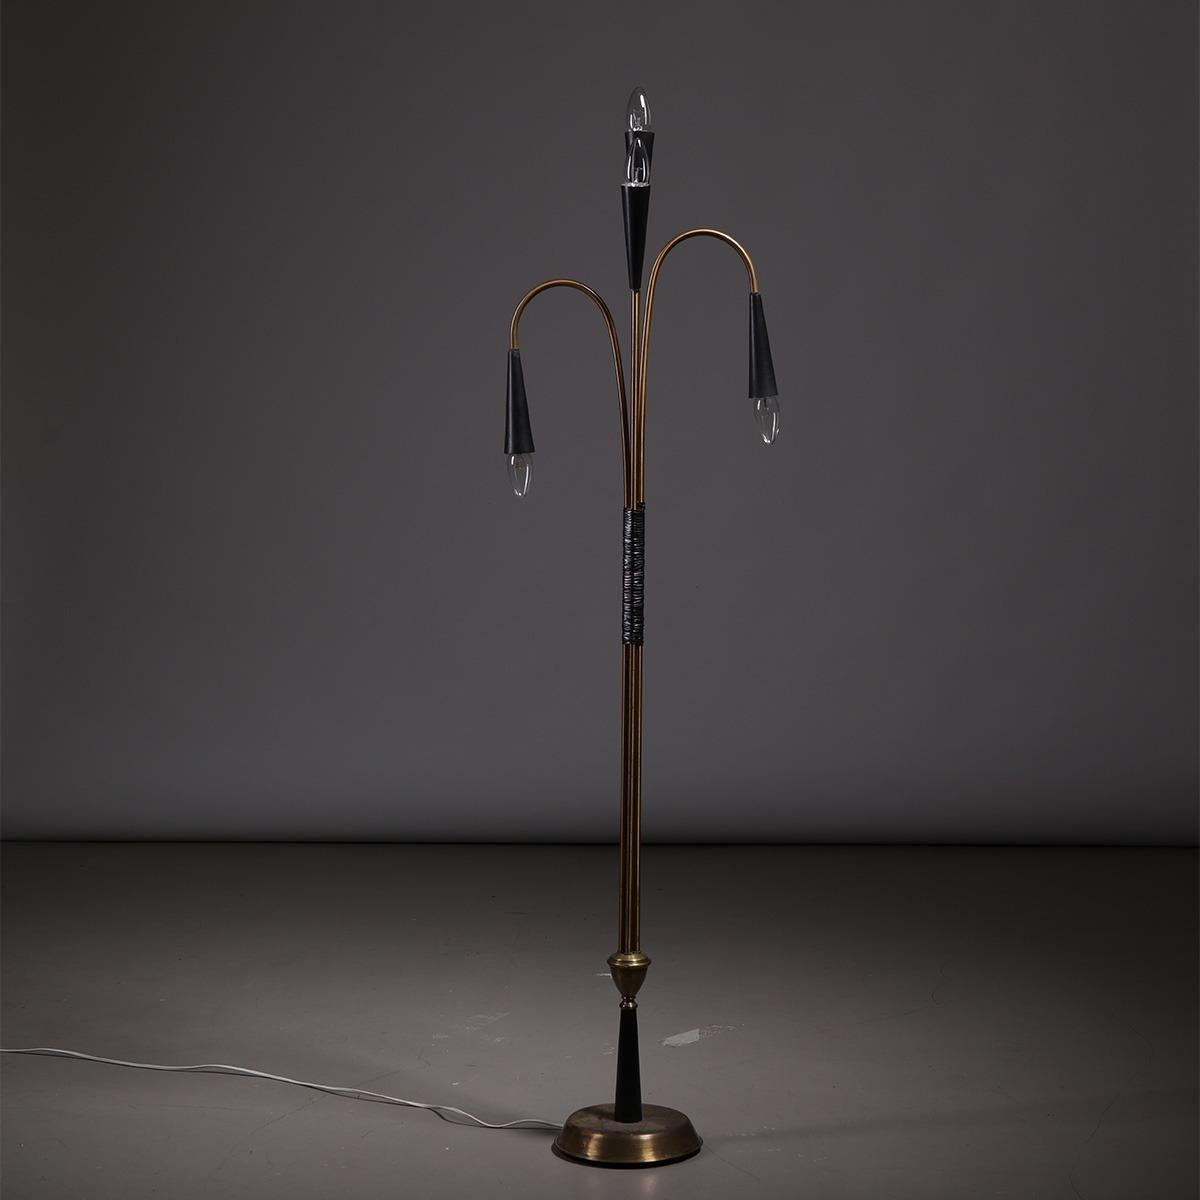 Seltene skulpturale Stehleuchte aus Messing, entworfen von Oscar Torlasco für Lumi in Italien, 1960er Jahre.

Diese Lampe ist ein sehr seltenes Modell des bekannten italienischen Designers und zeichnet sich durch einen einzigartigen skulpturalen